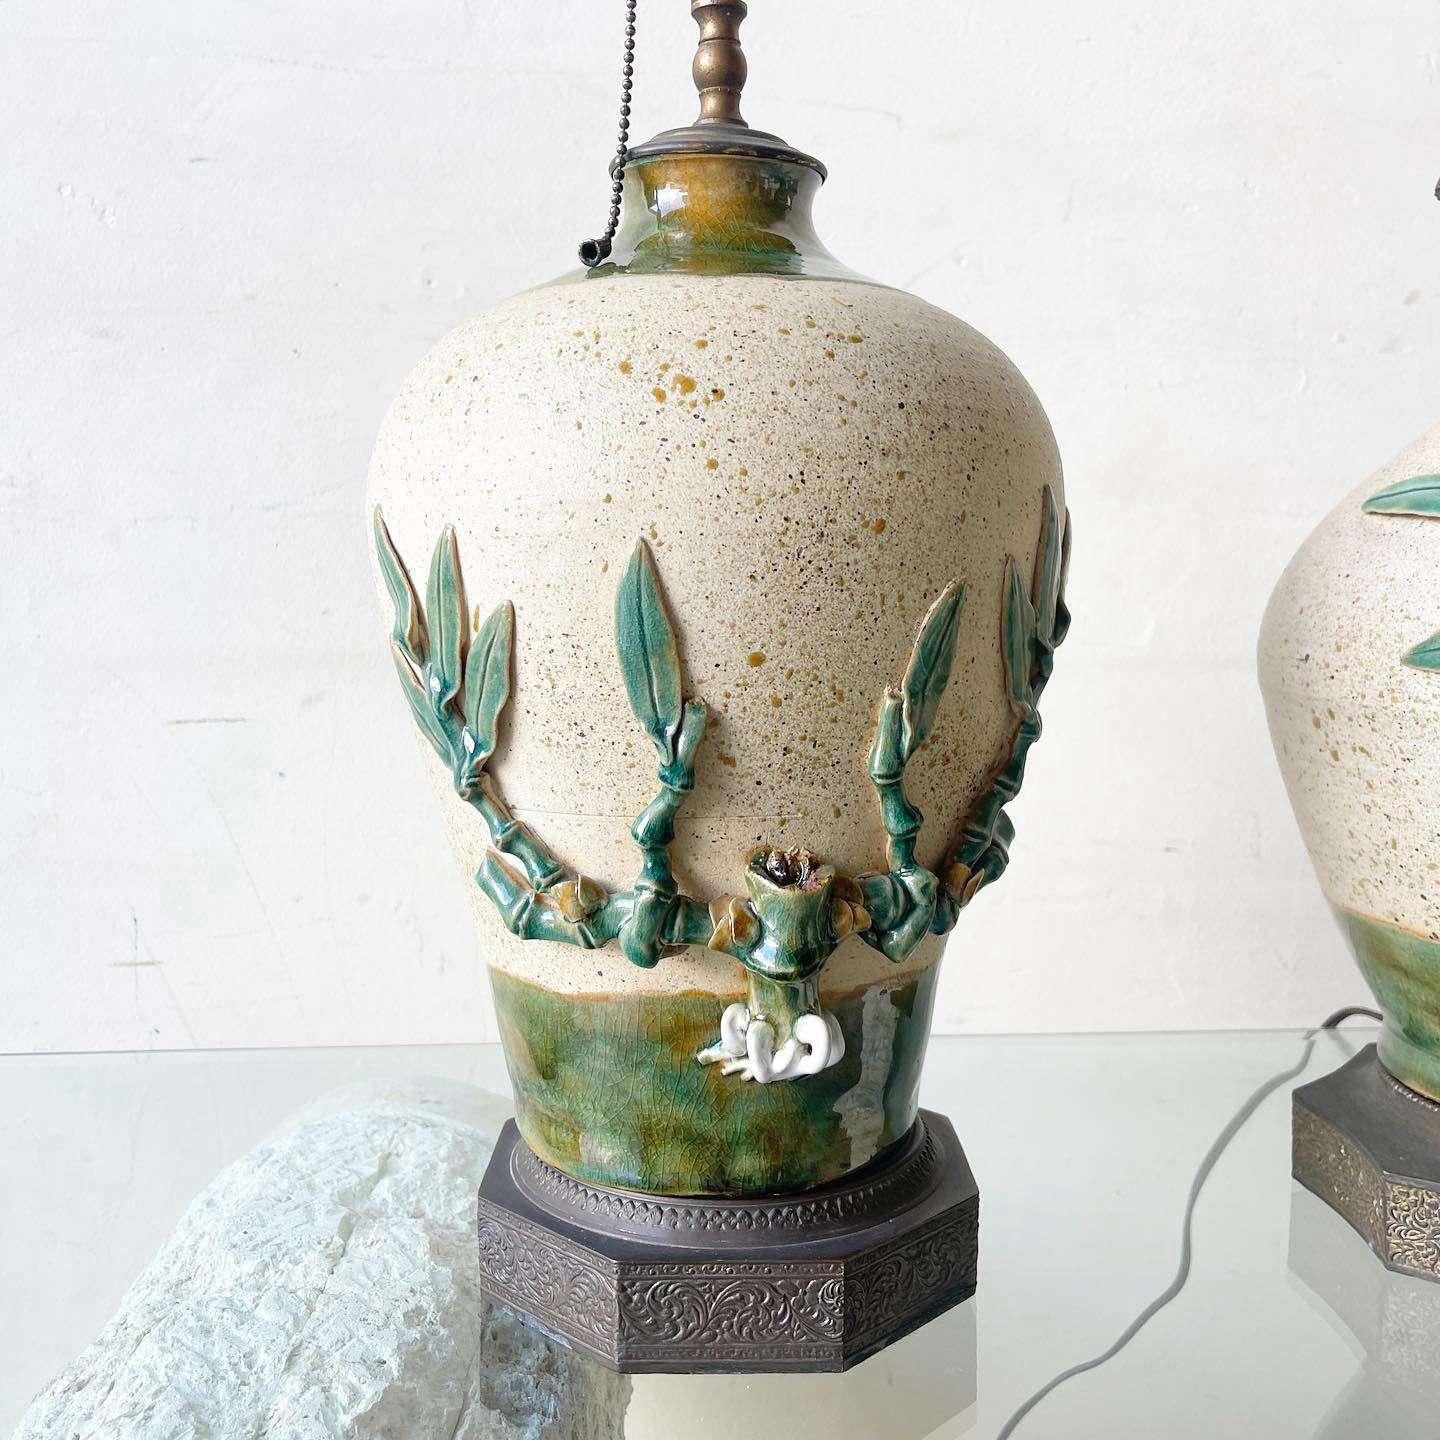 Etonnante paire de lampes de table vintage en céramique avec des cuivres et des plateaux en laiton. Chacun d'entre eux est orné d'une plante de bambou peinte et sculptée à la main qui pousse sur les côtés. L'une des lampes représente un oiseau.
